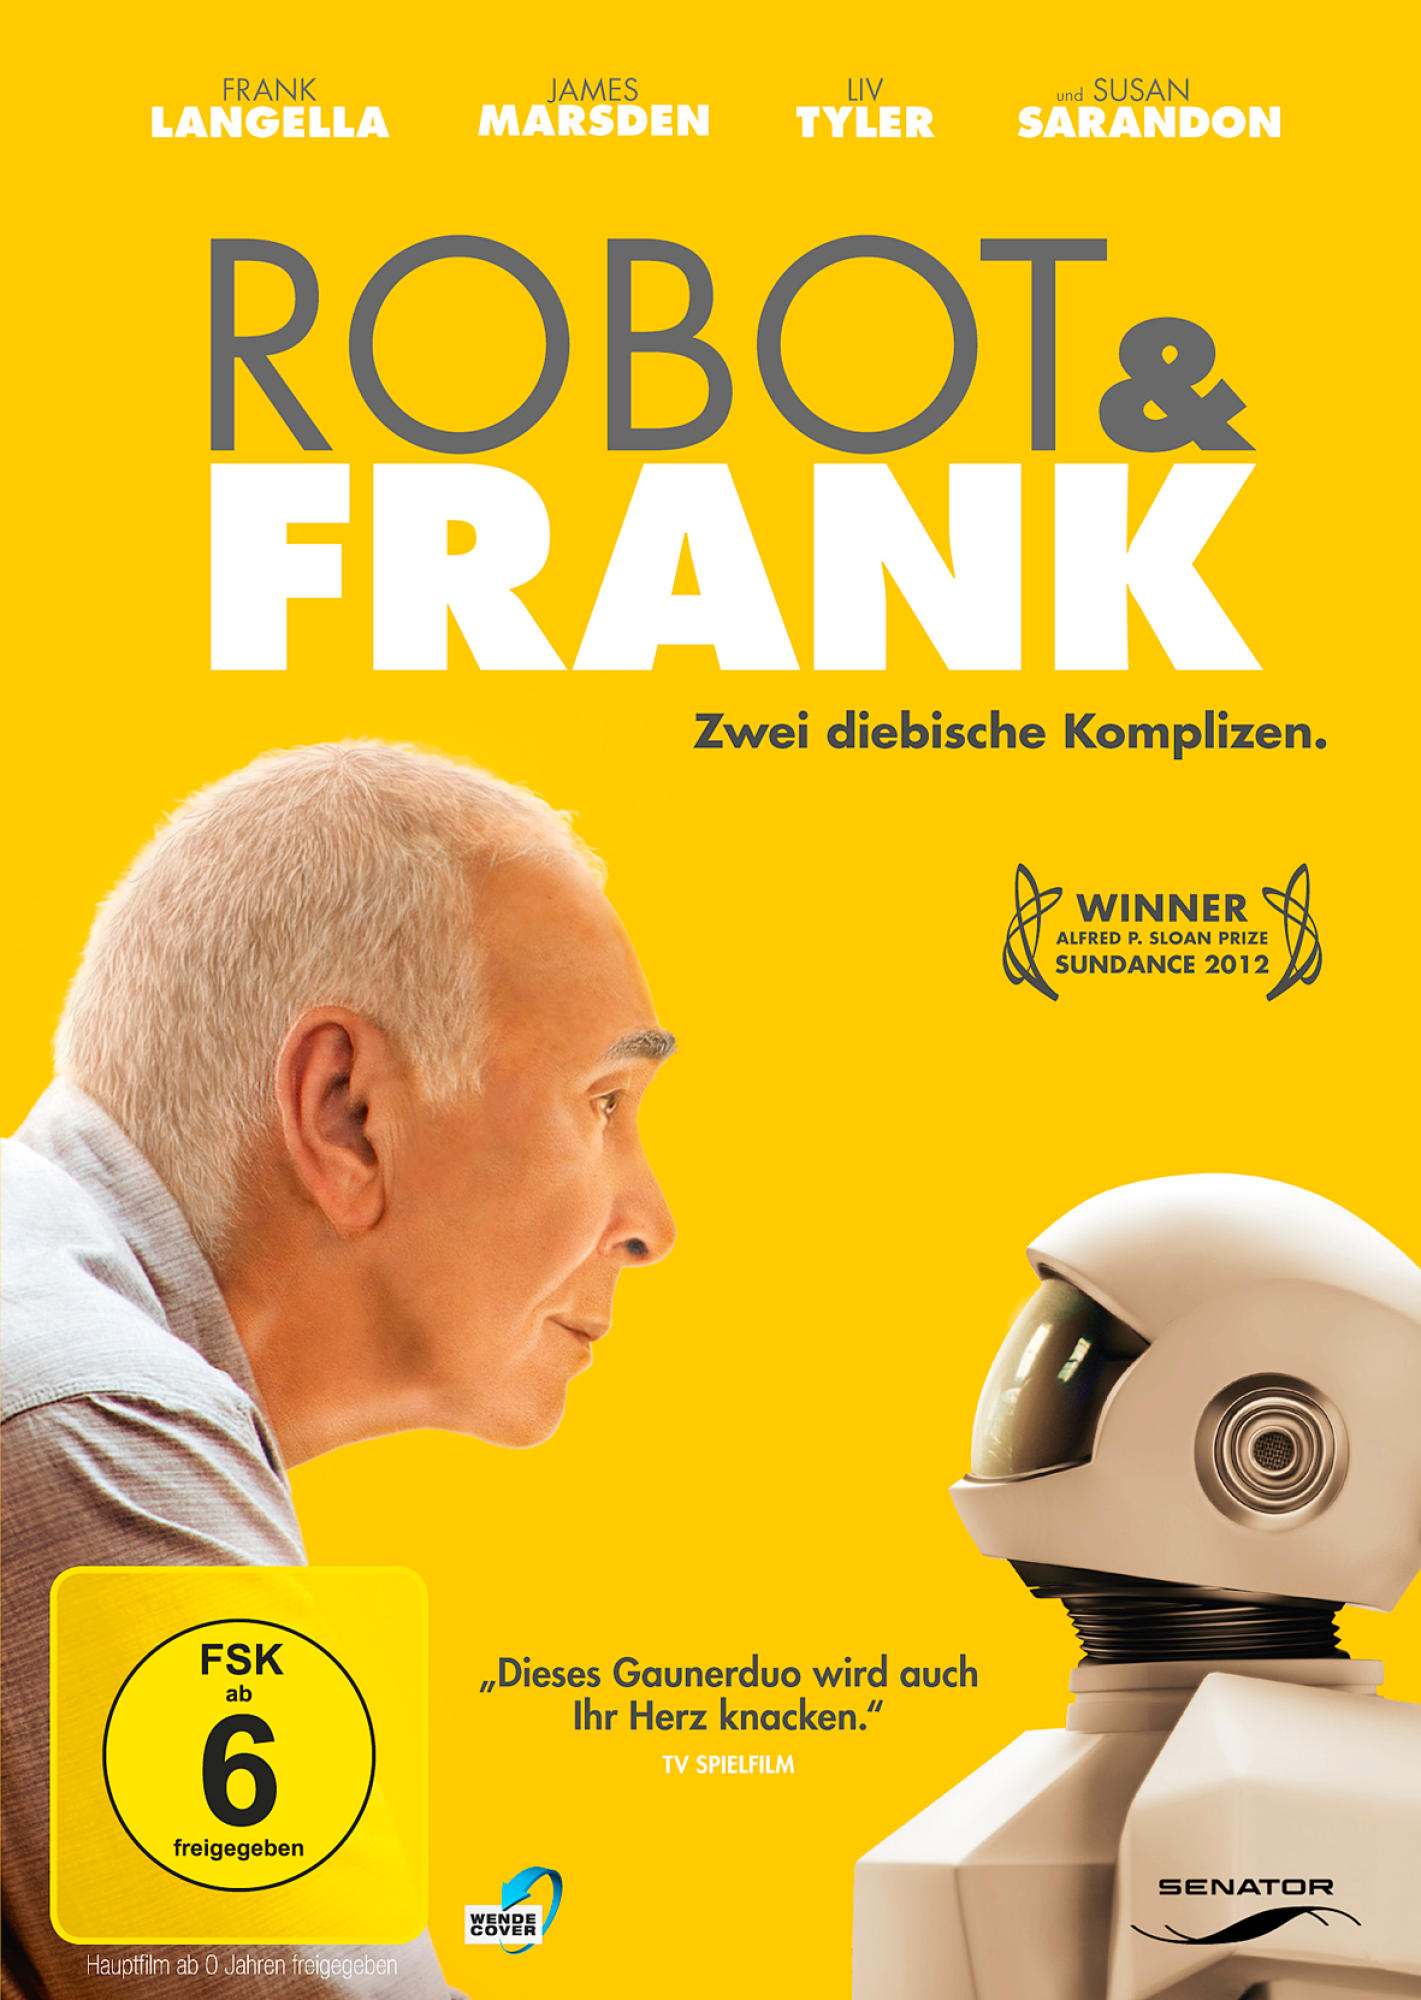 Frank & Robot DVD